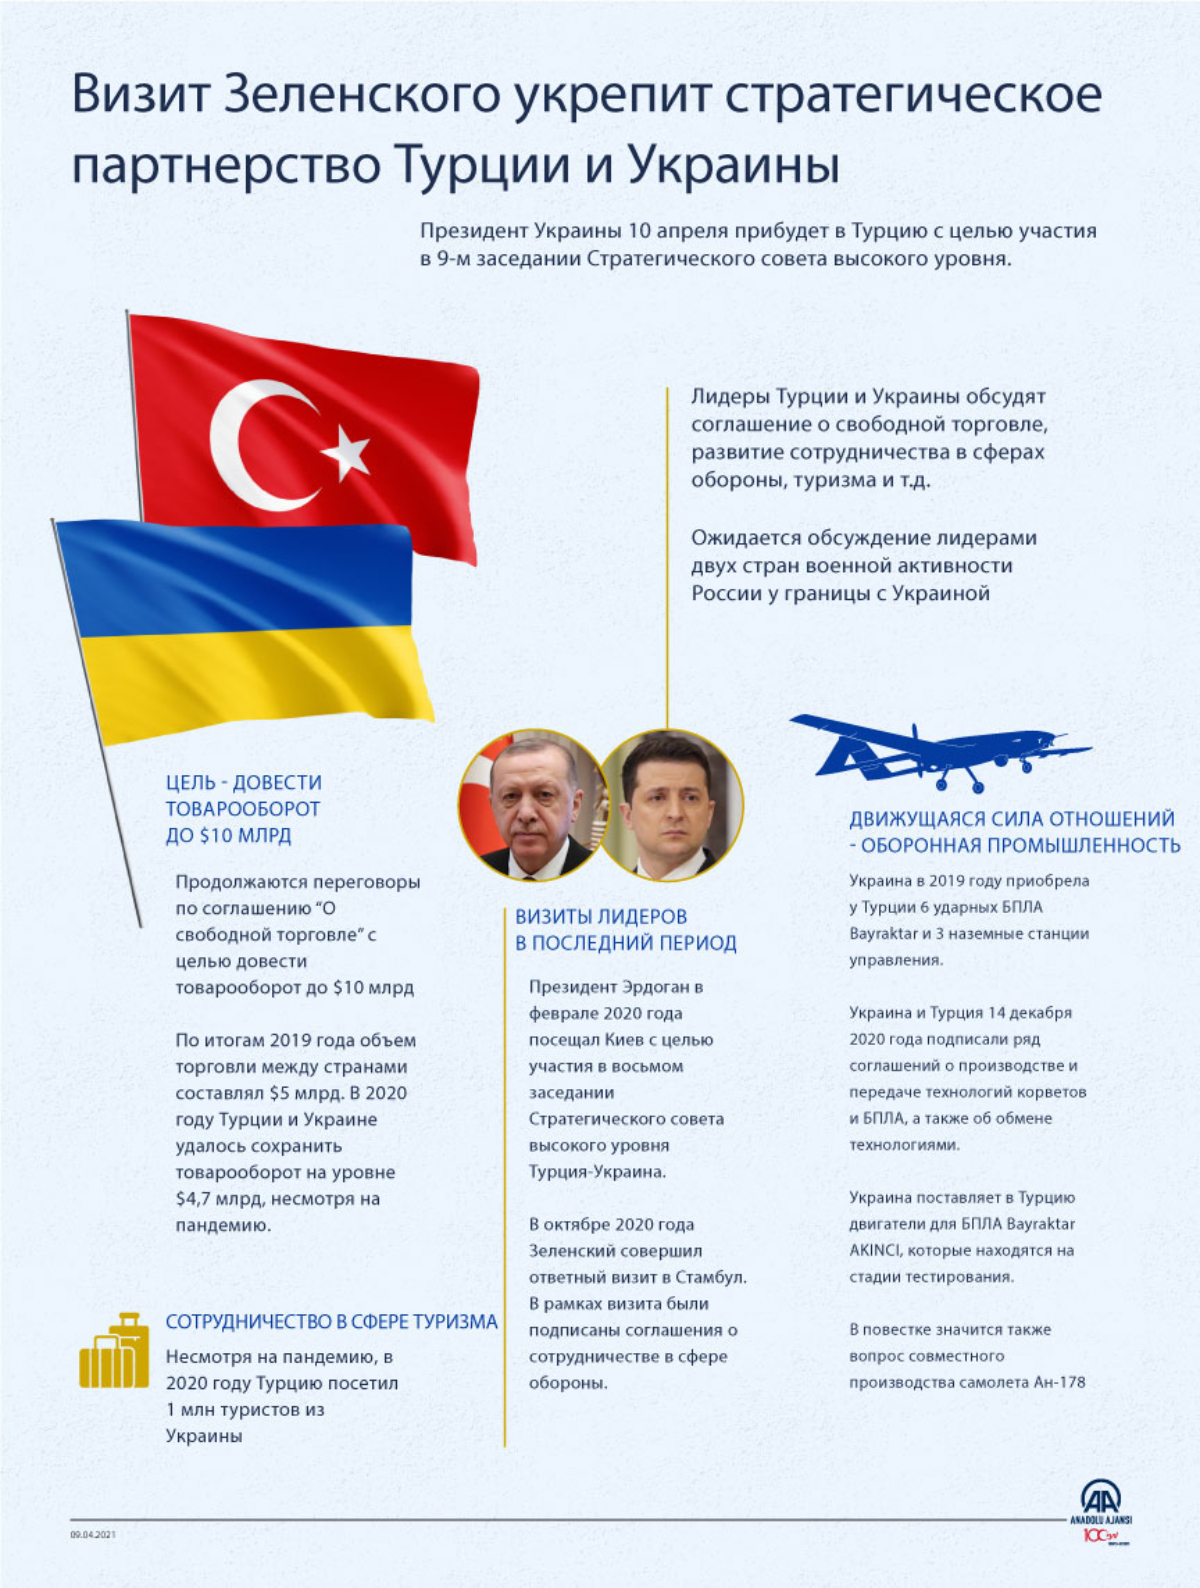 Визит Зеленского укрепит стратегическое партнерство Турции и Украины